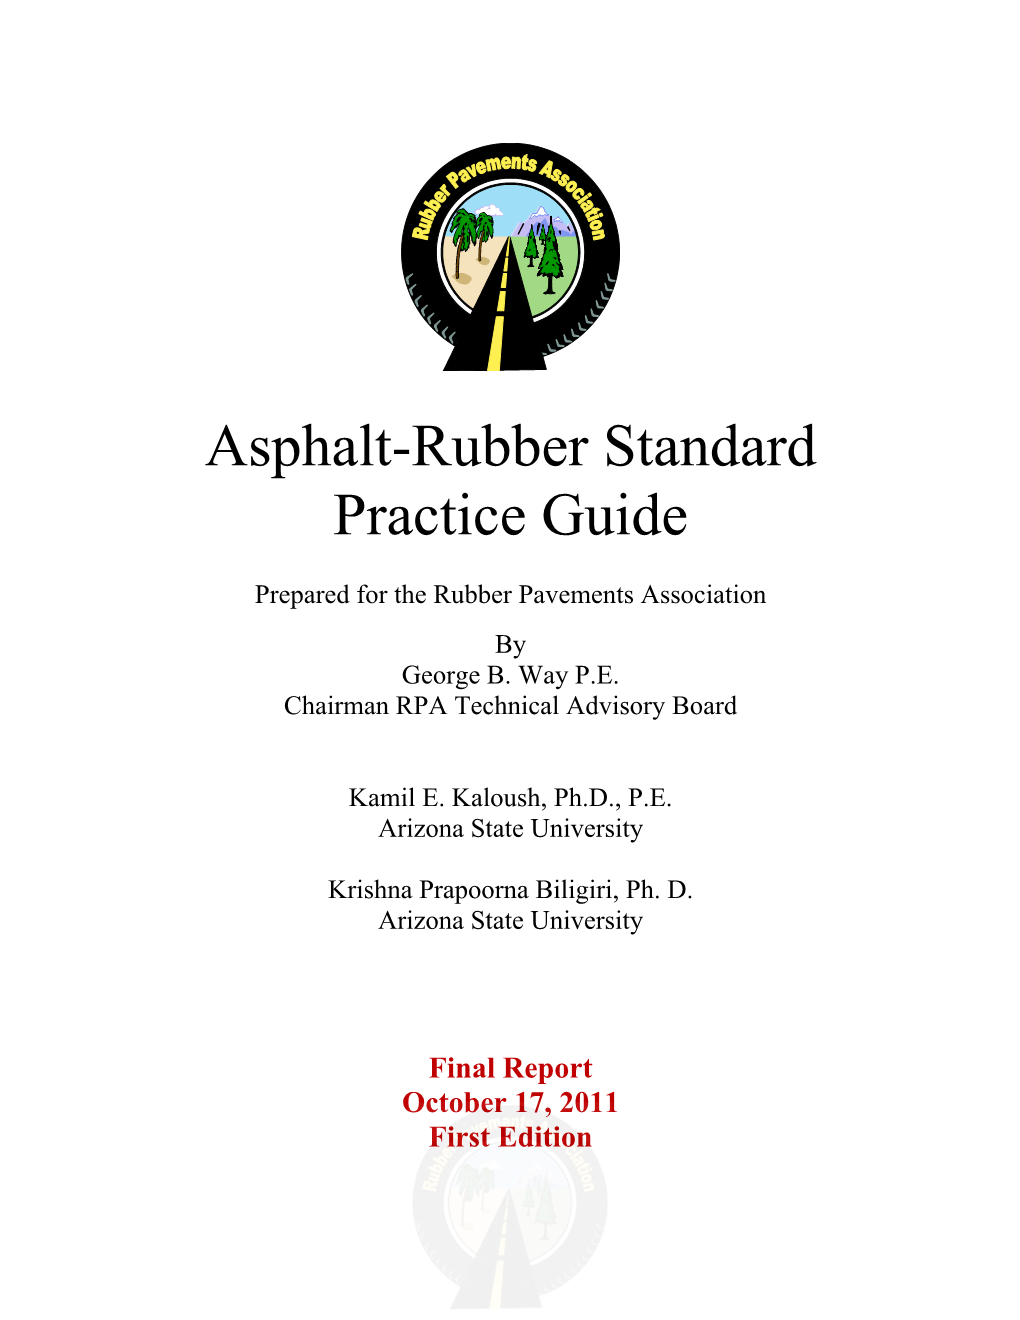 Asphalt-Rubber Standard Practice Guide